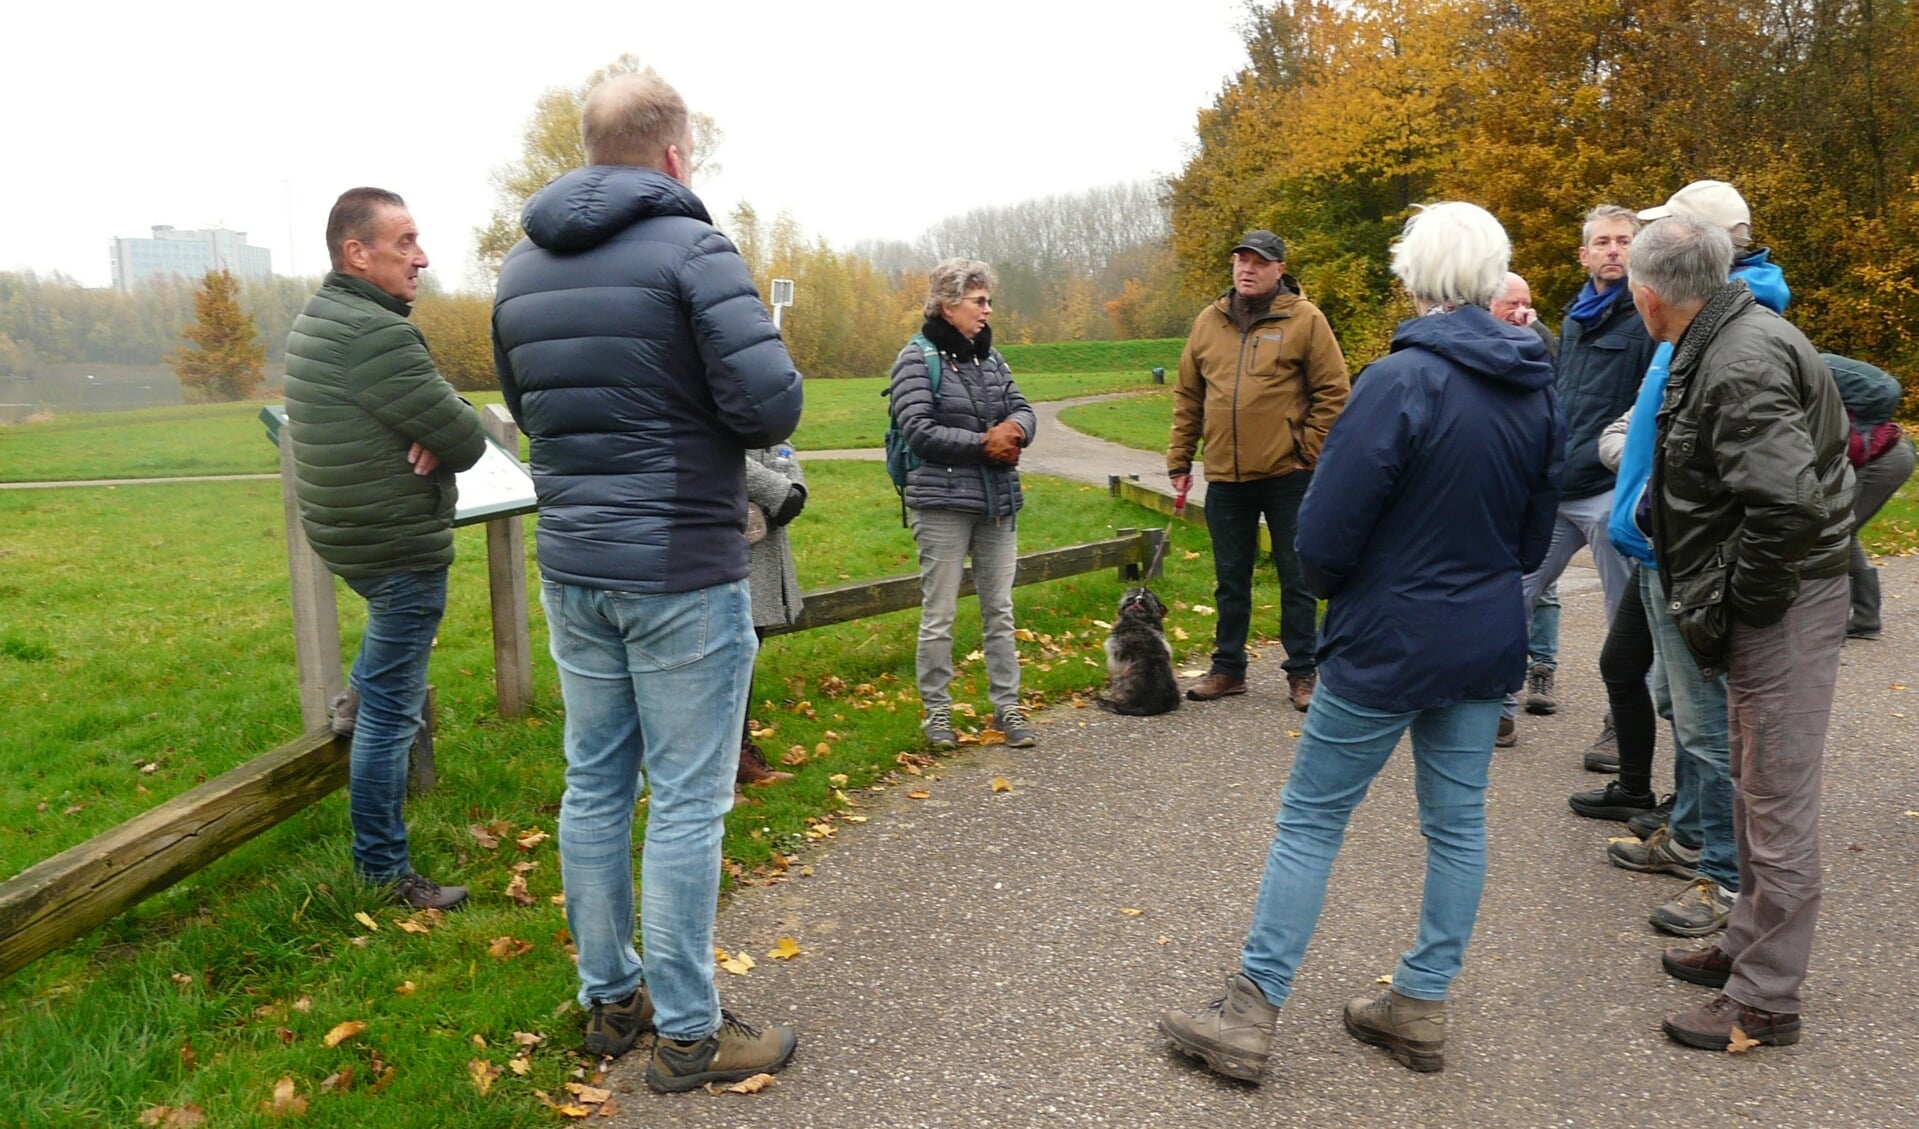 De groep wandelaars deelt ideeën met elkaar over recreatiemogelijkheden bij de Nedereindse Plas.